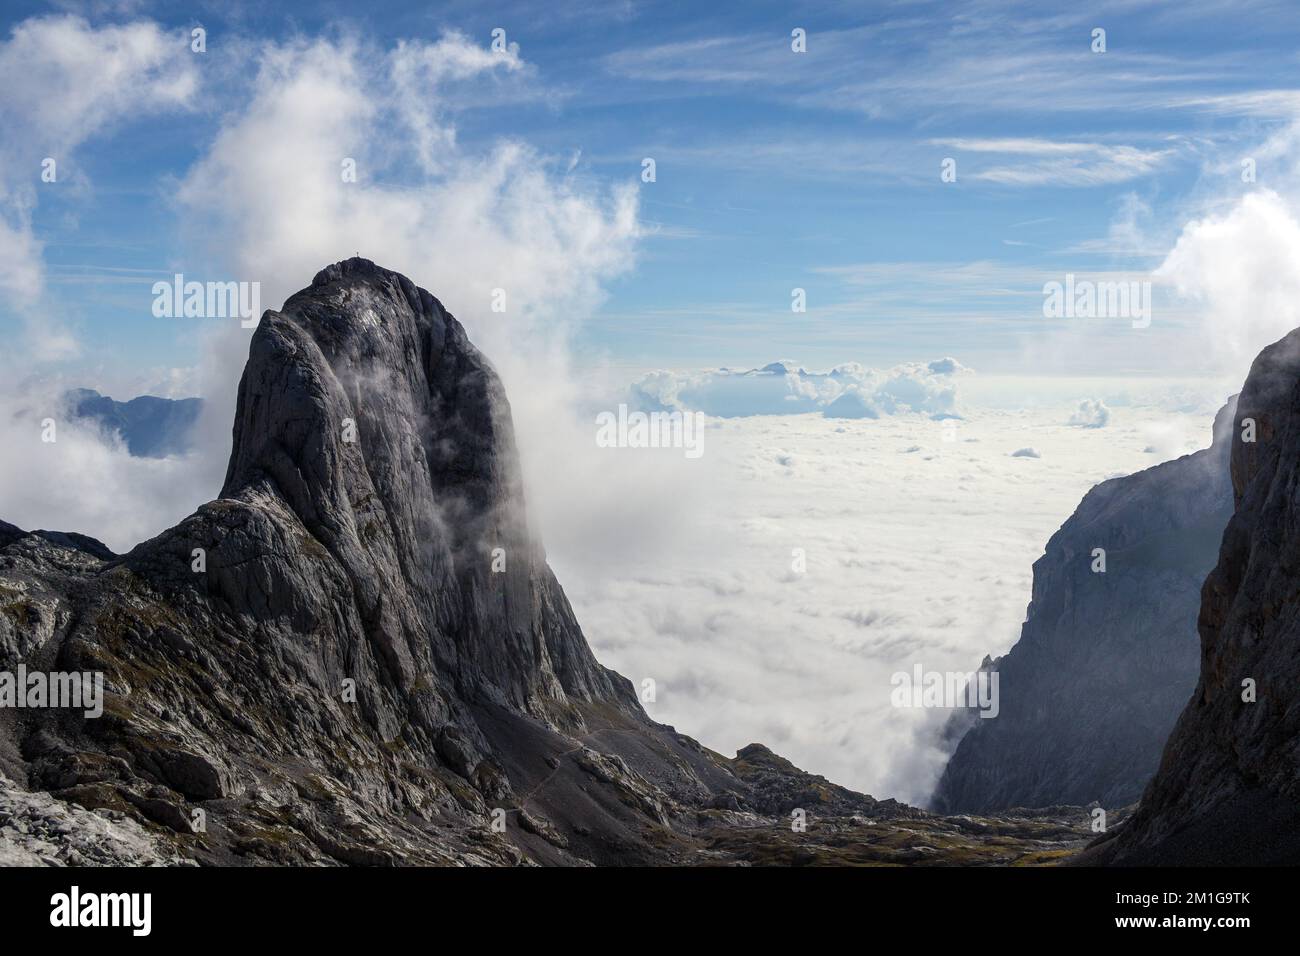 Torsäulenberg von Westen. Sich bewegende Wolken. Hochkönig-Gebirgsgruppe. Berchtesgaden Alps, Salzburgerland, Österreich. Europa Stockfoto